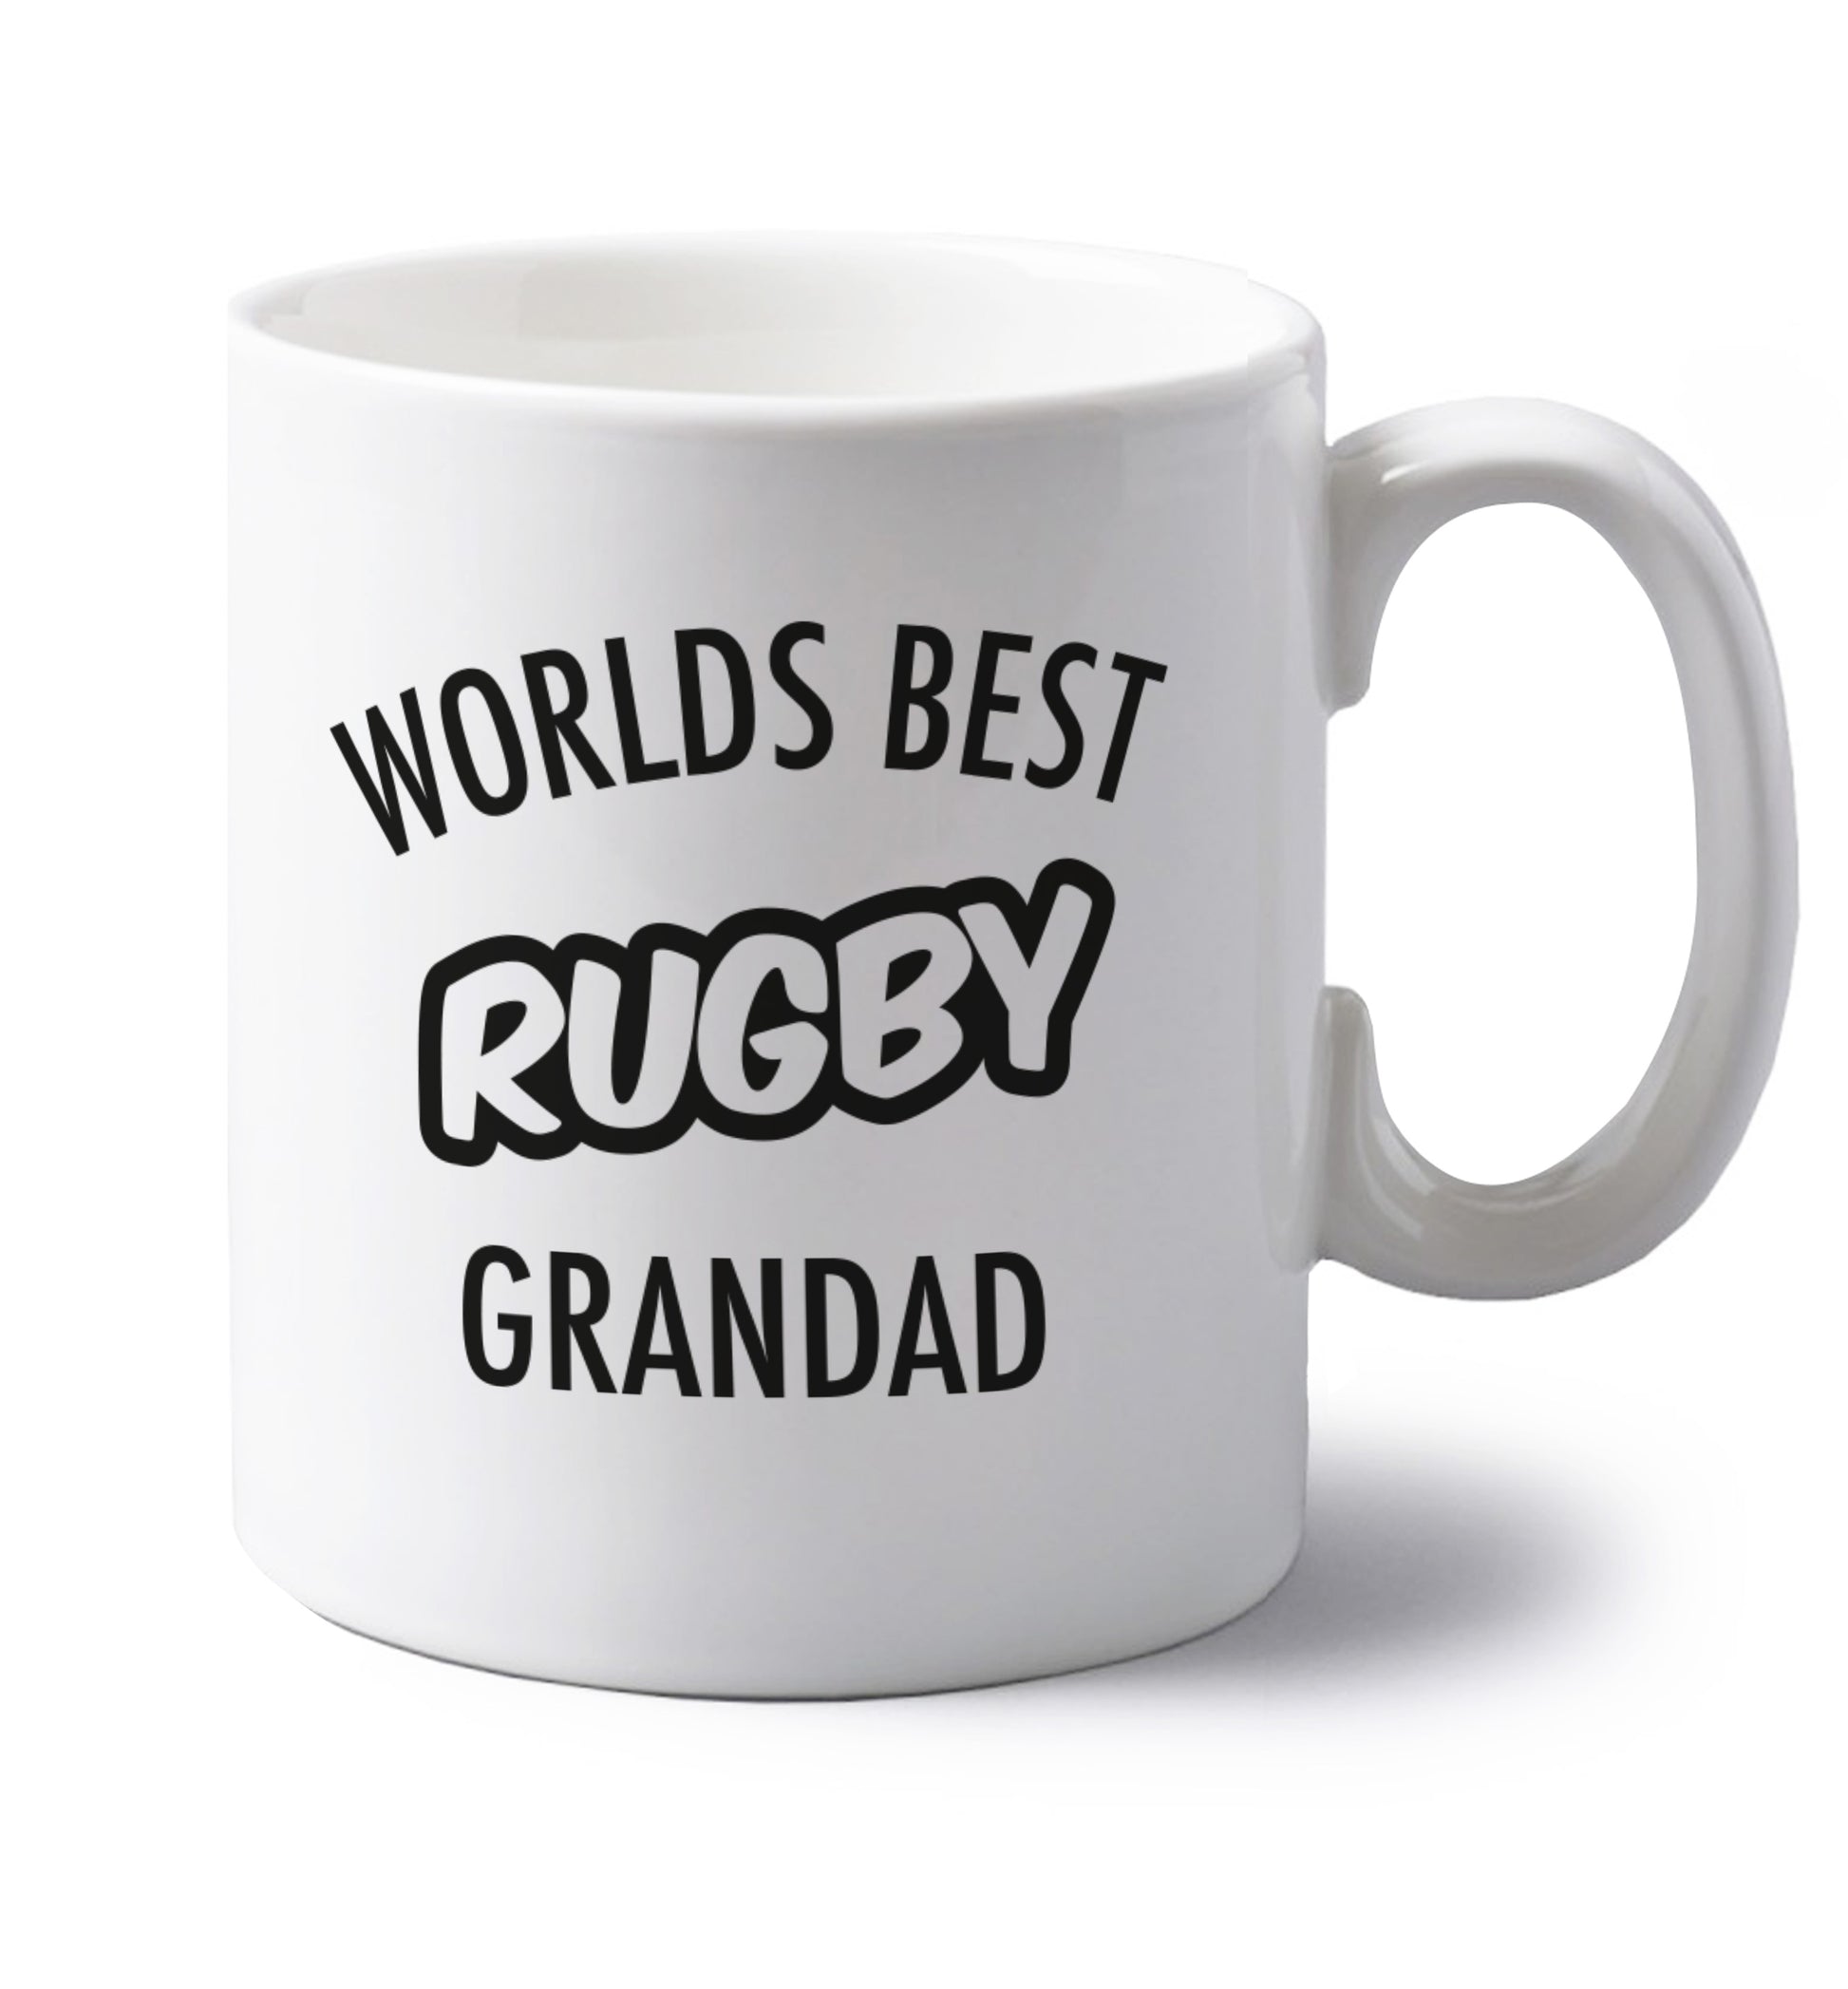 Worlds best rugby grandad left handed white ceramic mug 